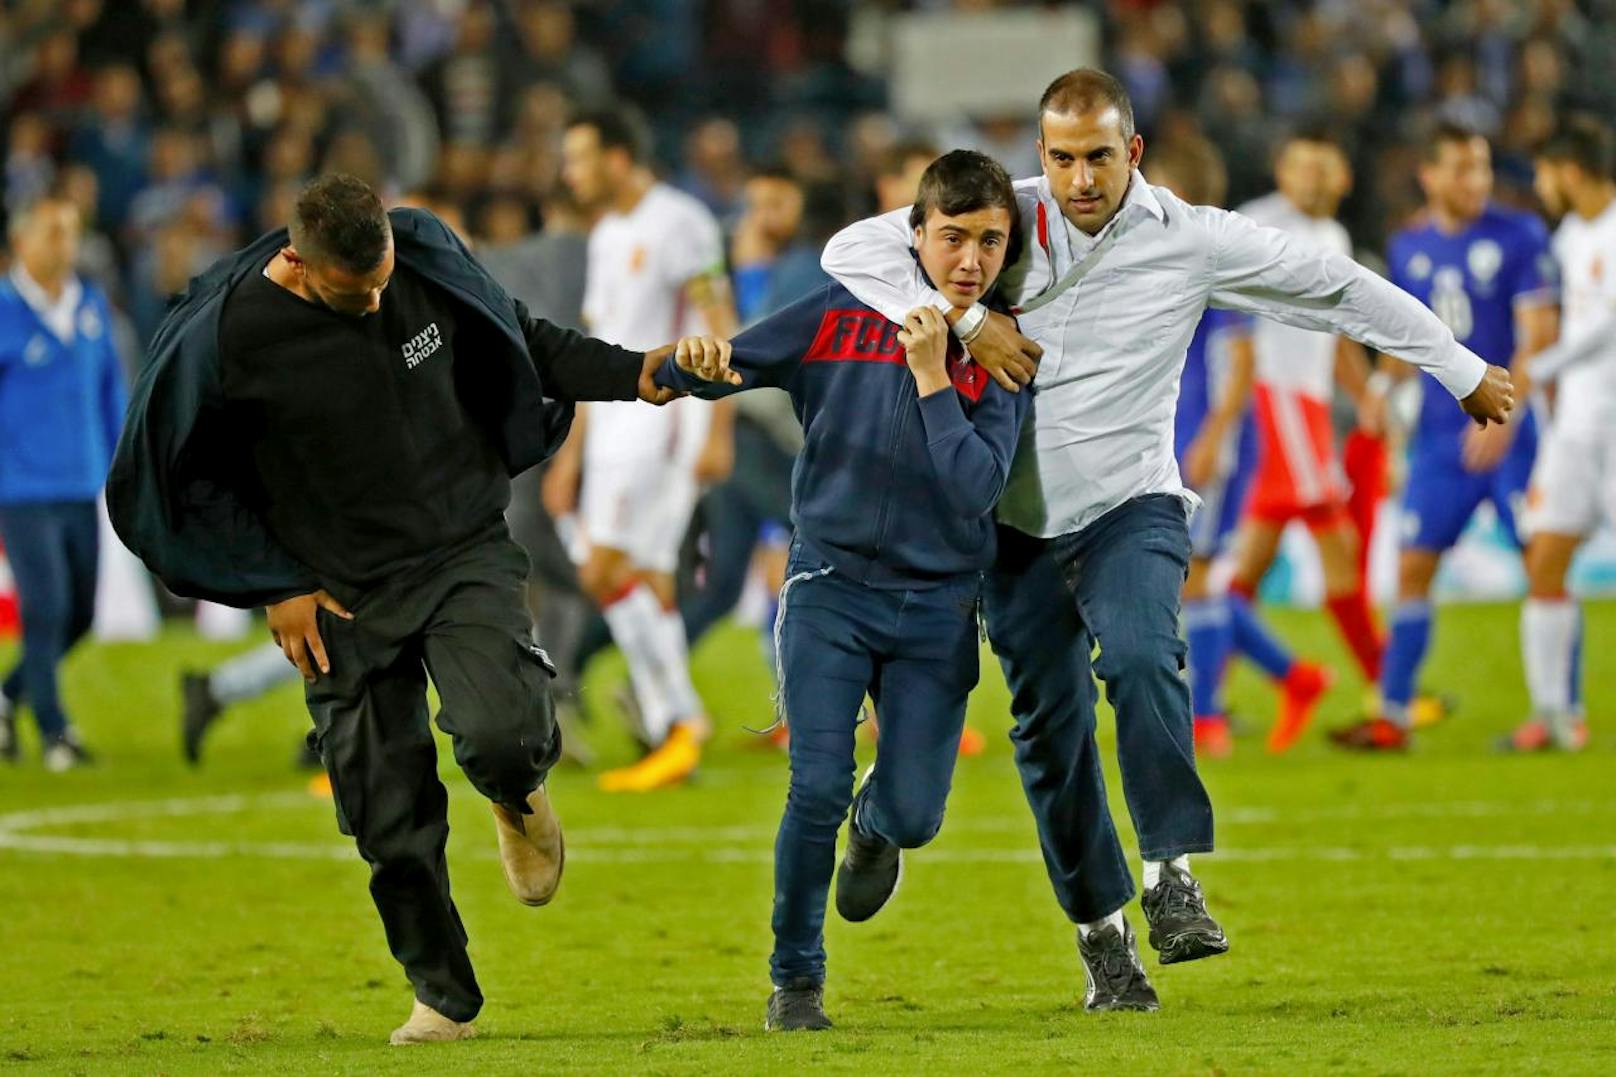 Flitzer stürmten gegen Spanien das Spielfeld. Einige wollten nur ein Selfie, einer soll mit einem Messer bewaffnet gewesen sein.